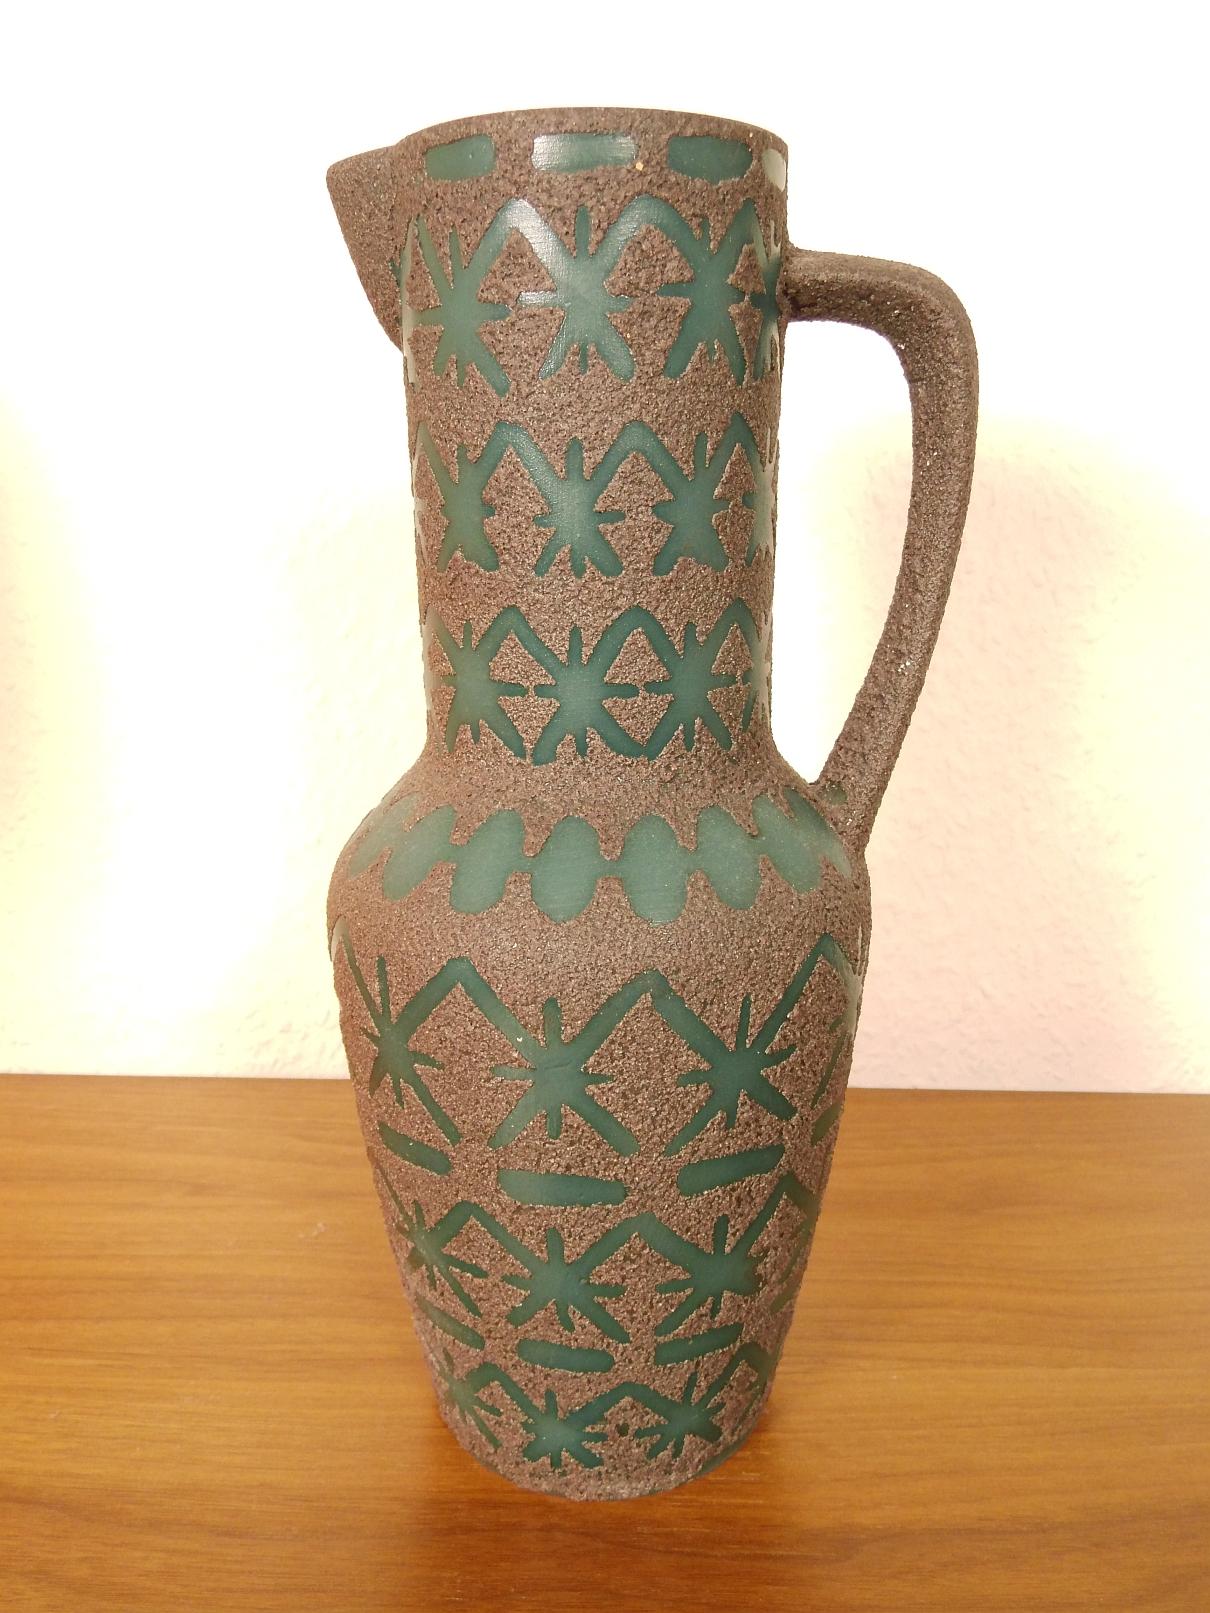 Magnifique vase en poterie d'Allemagne.
Fabricant : Ceramano Rustica

Vitrage Lava rare et spécial.

Fait à la main.
Très bien conservé. A un endroit, le glaçage de lave est découpé, voir photo.
Pour les bouquets plus importants : 30 cm de hauteur.
